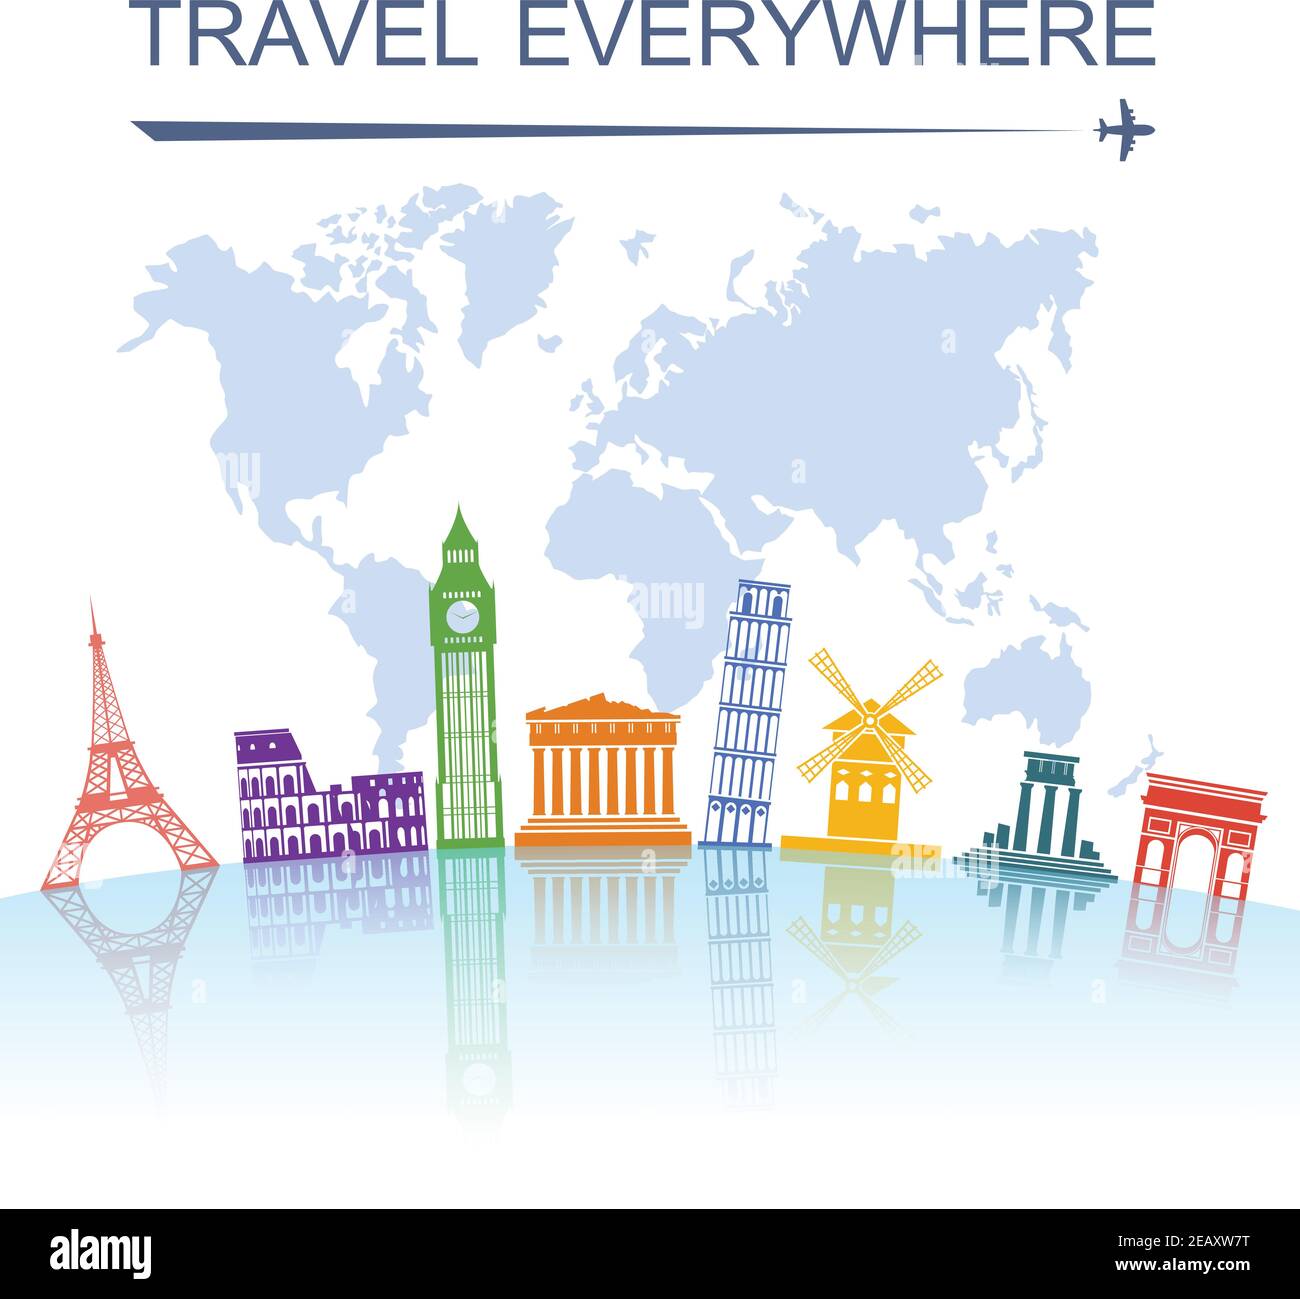 Reisebüro spektakuläre weltweite Sightseeing Sehenswürdigkeiten Touren Konzept Poster mit italienische Turm von pisa abstrakten Vektor-Illustration Stock Vektor